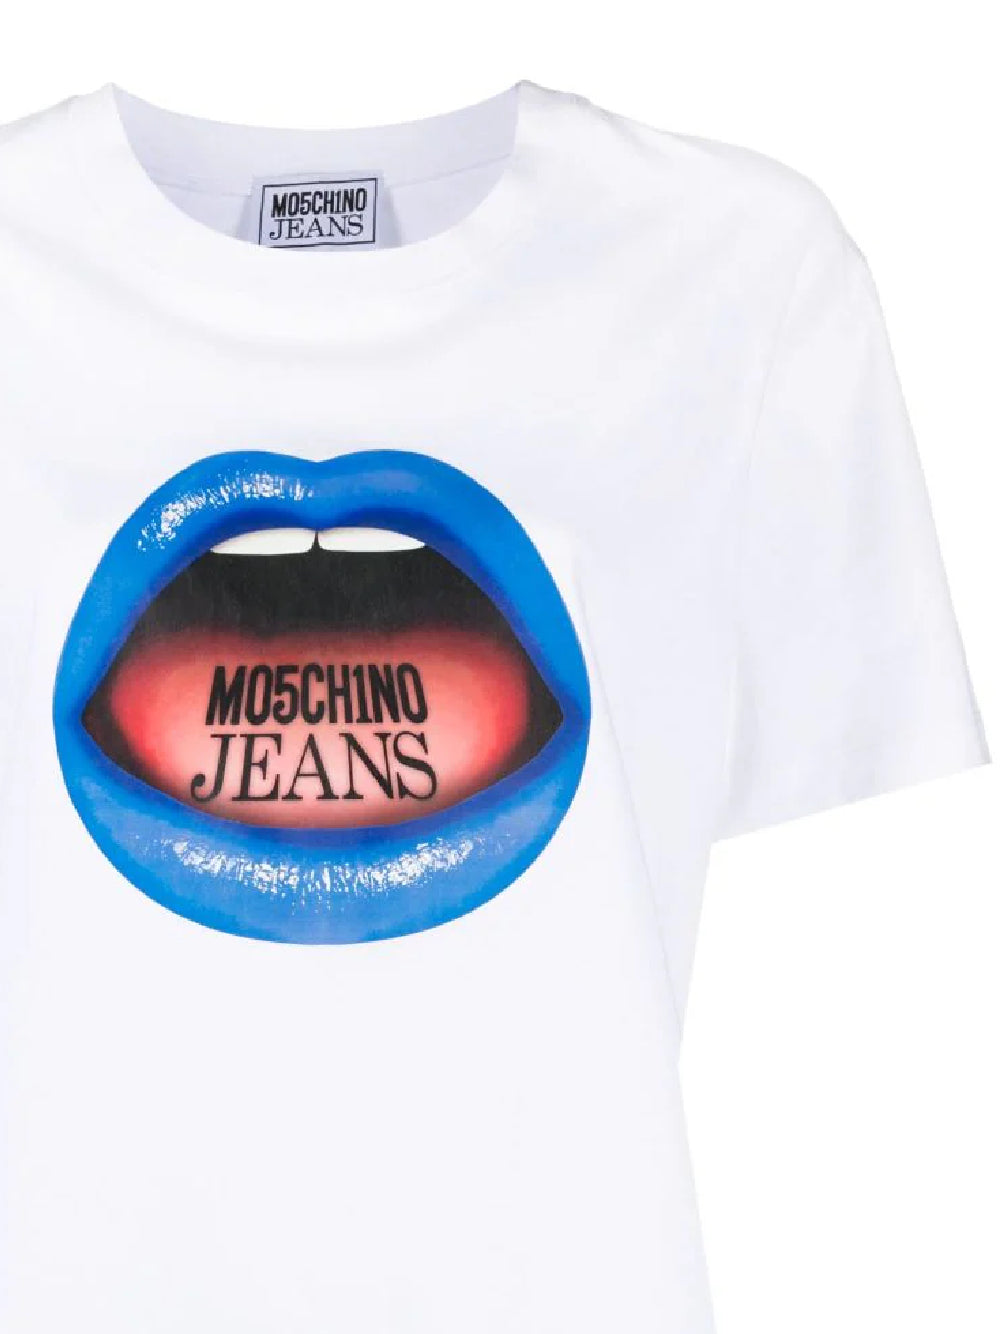 MOSCHINO JEANS T-shirt e Polo-MOSCHINO JEANS- Maniche corte. Dresso